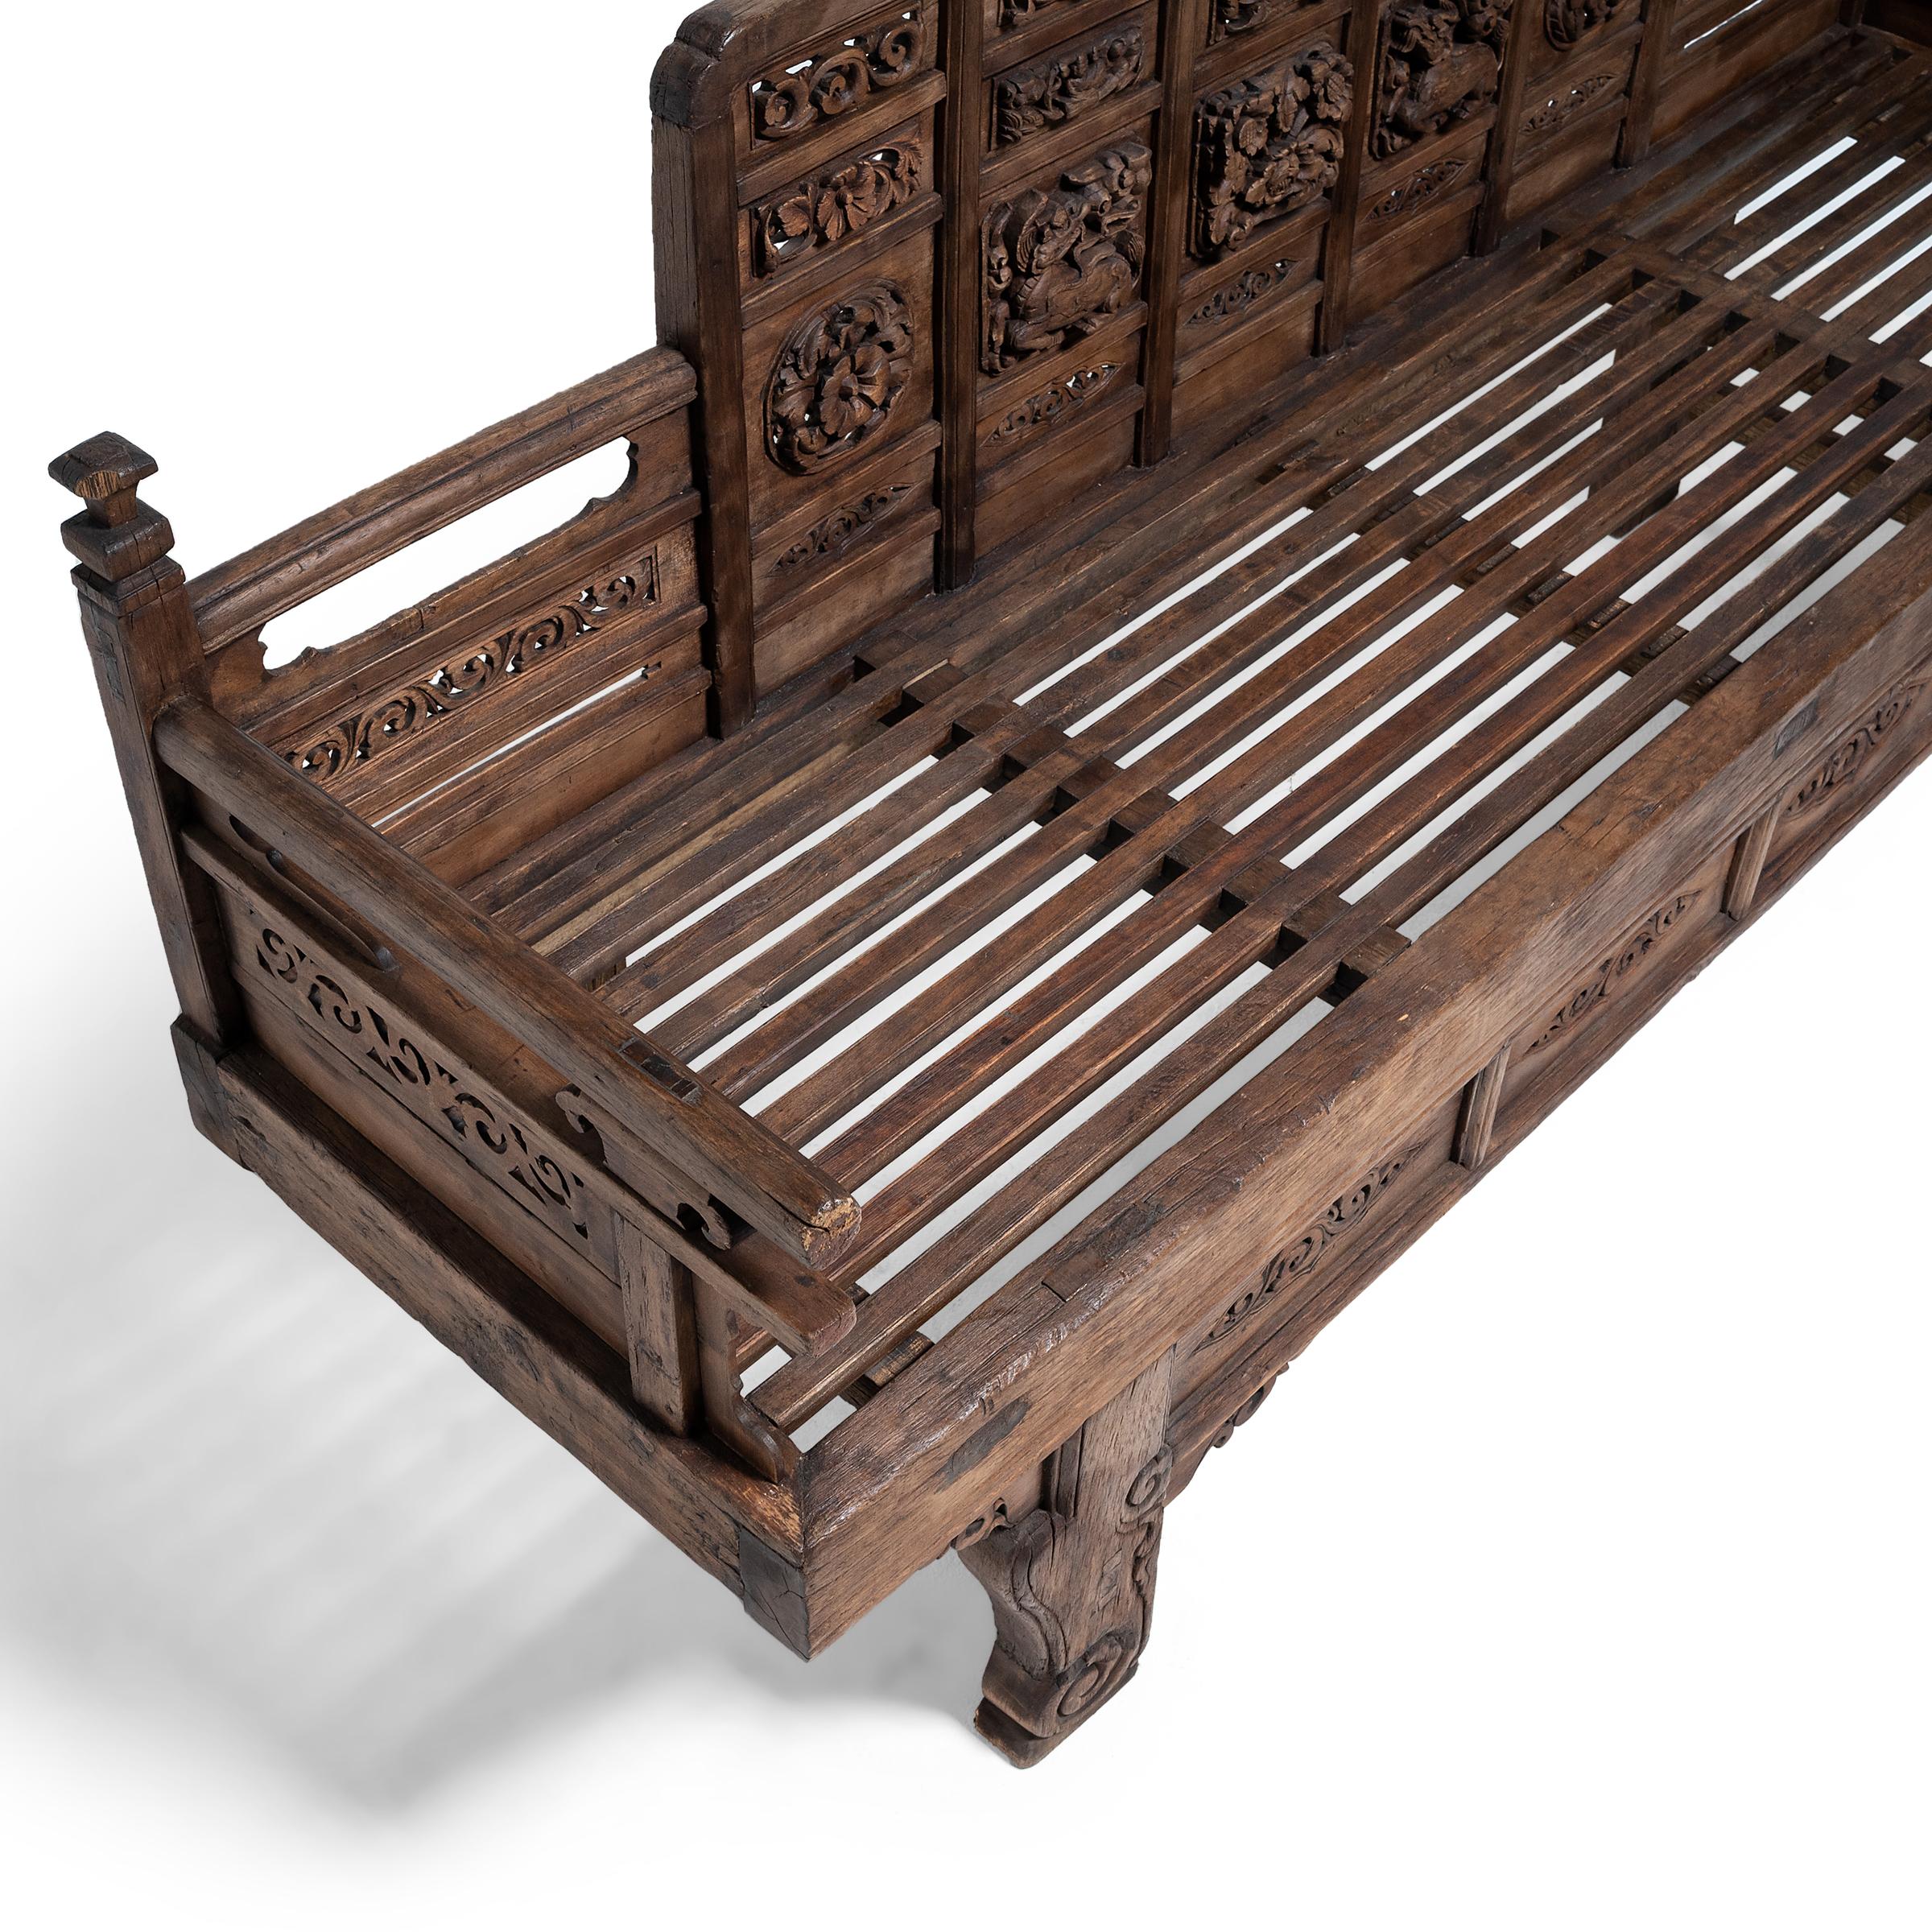 Aufwändig geschnitztes chinesisches Luohan-Bett, um 1550 (18. Jahrhundert und früher)